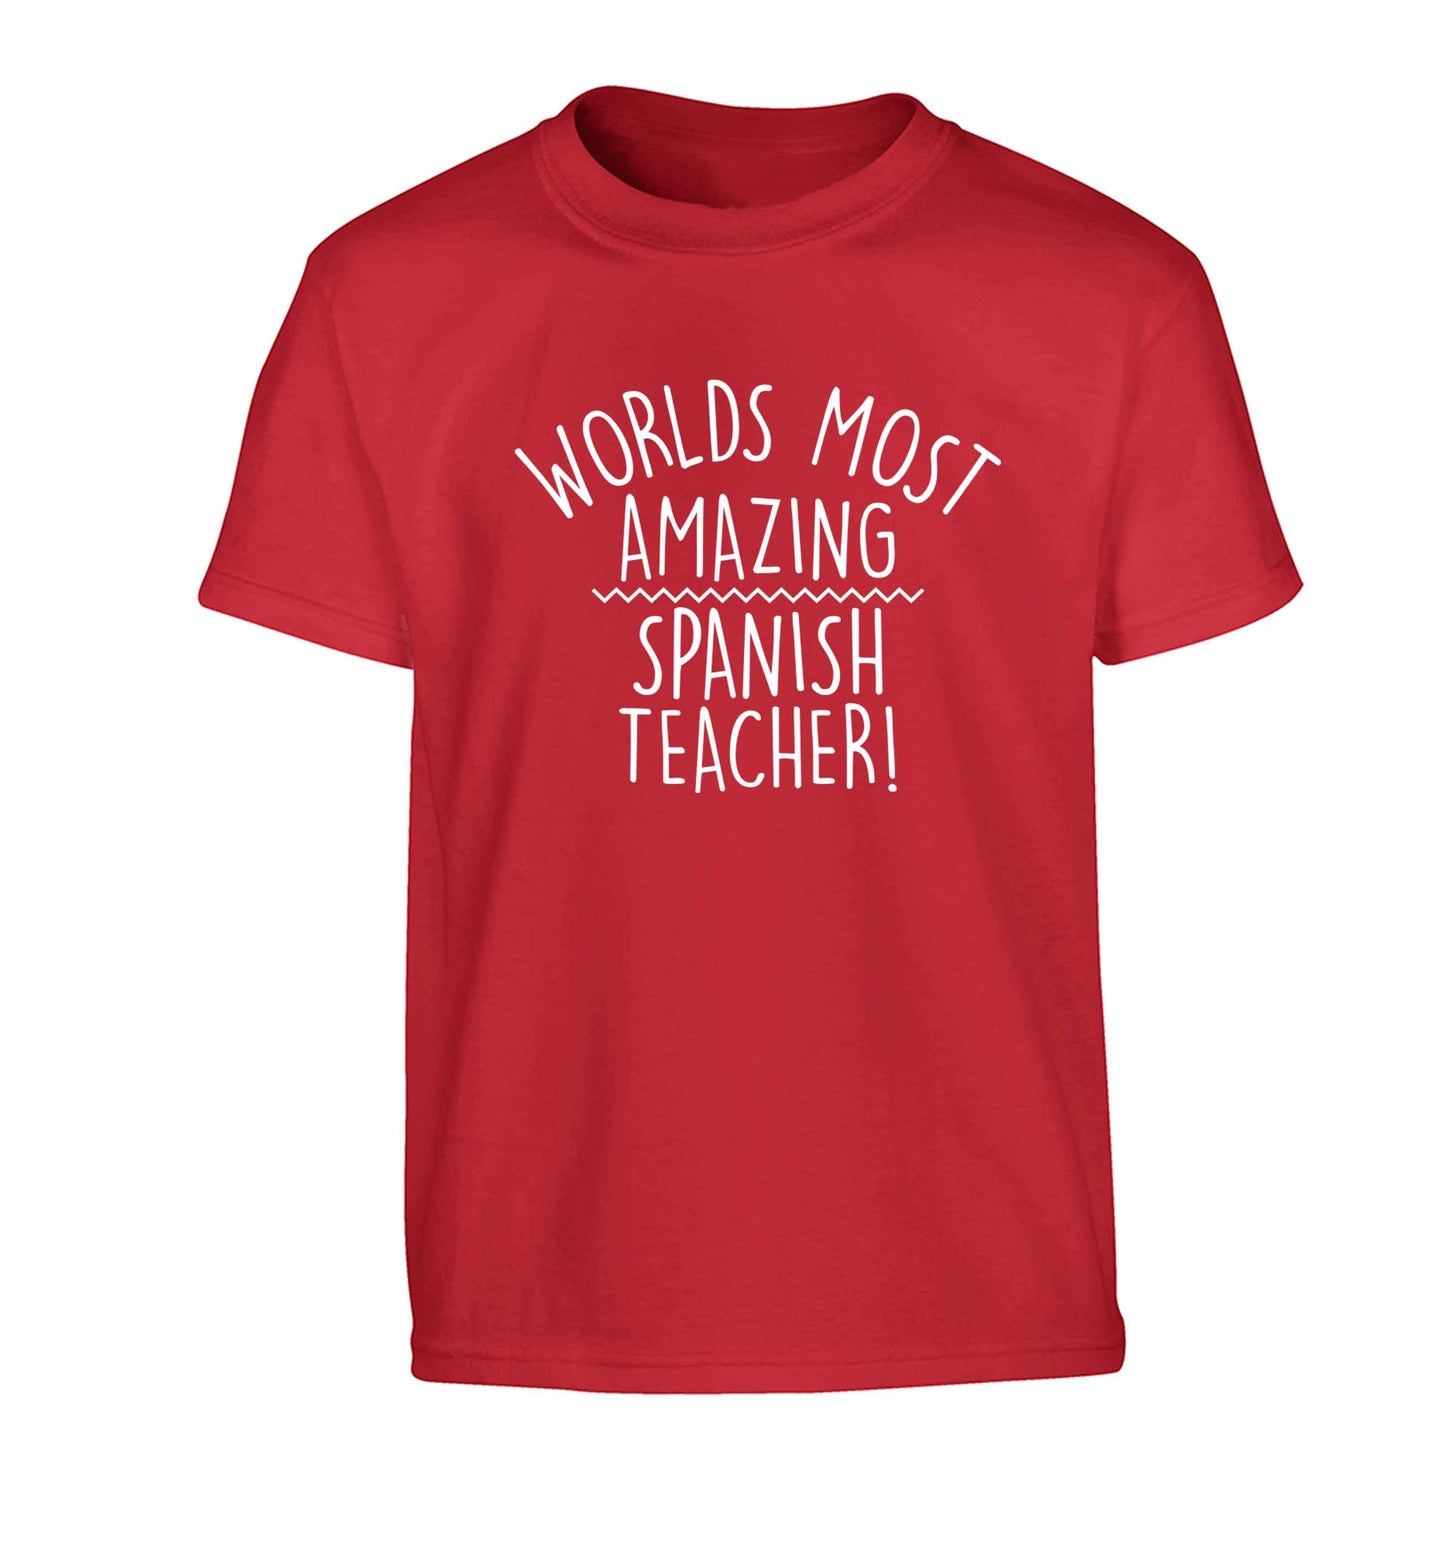 Worlds most amazing Spanish teacher Children's red Tshirt 12-13 Years